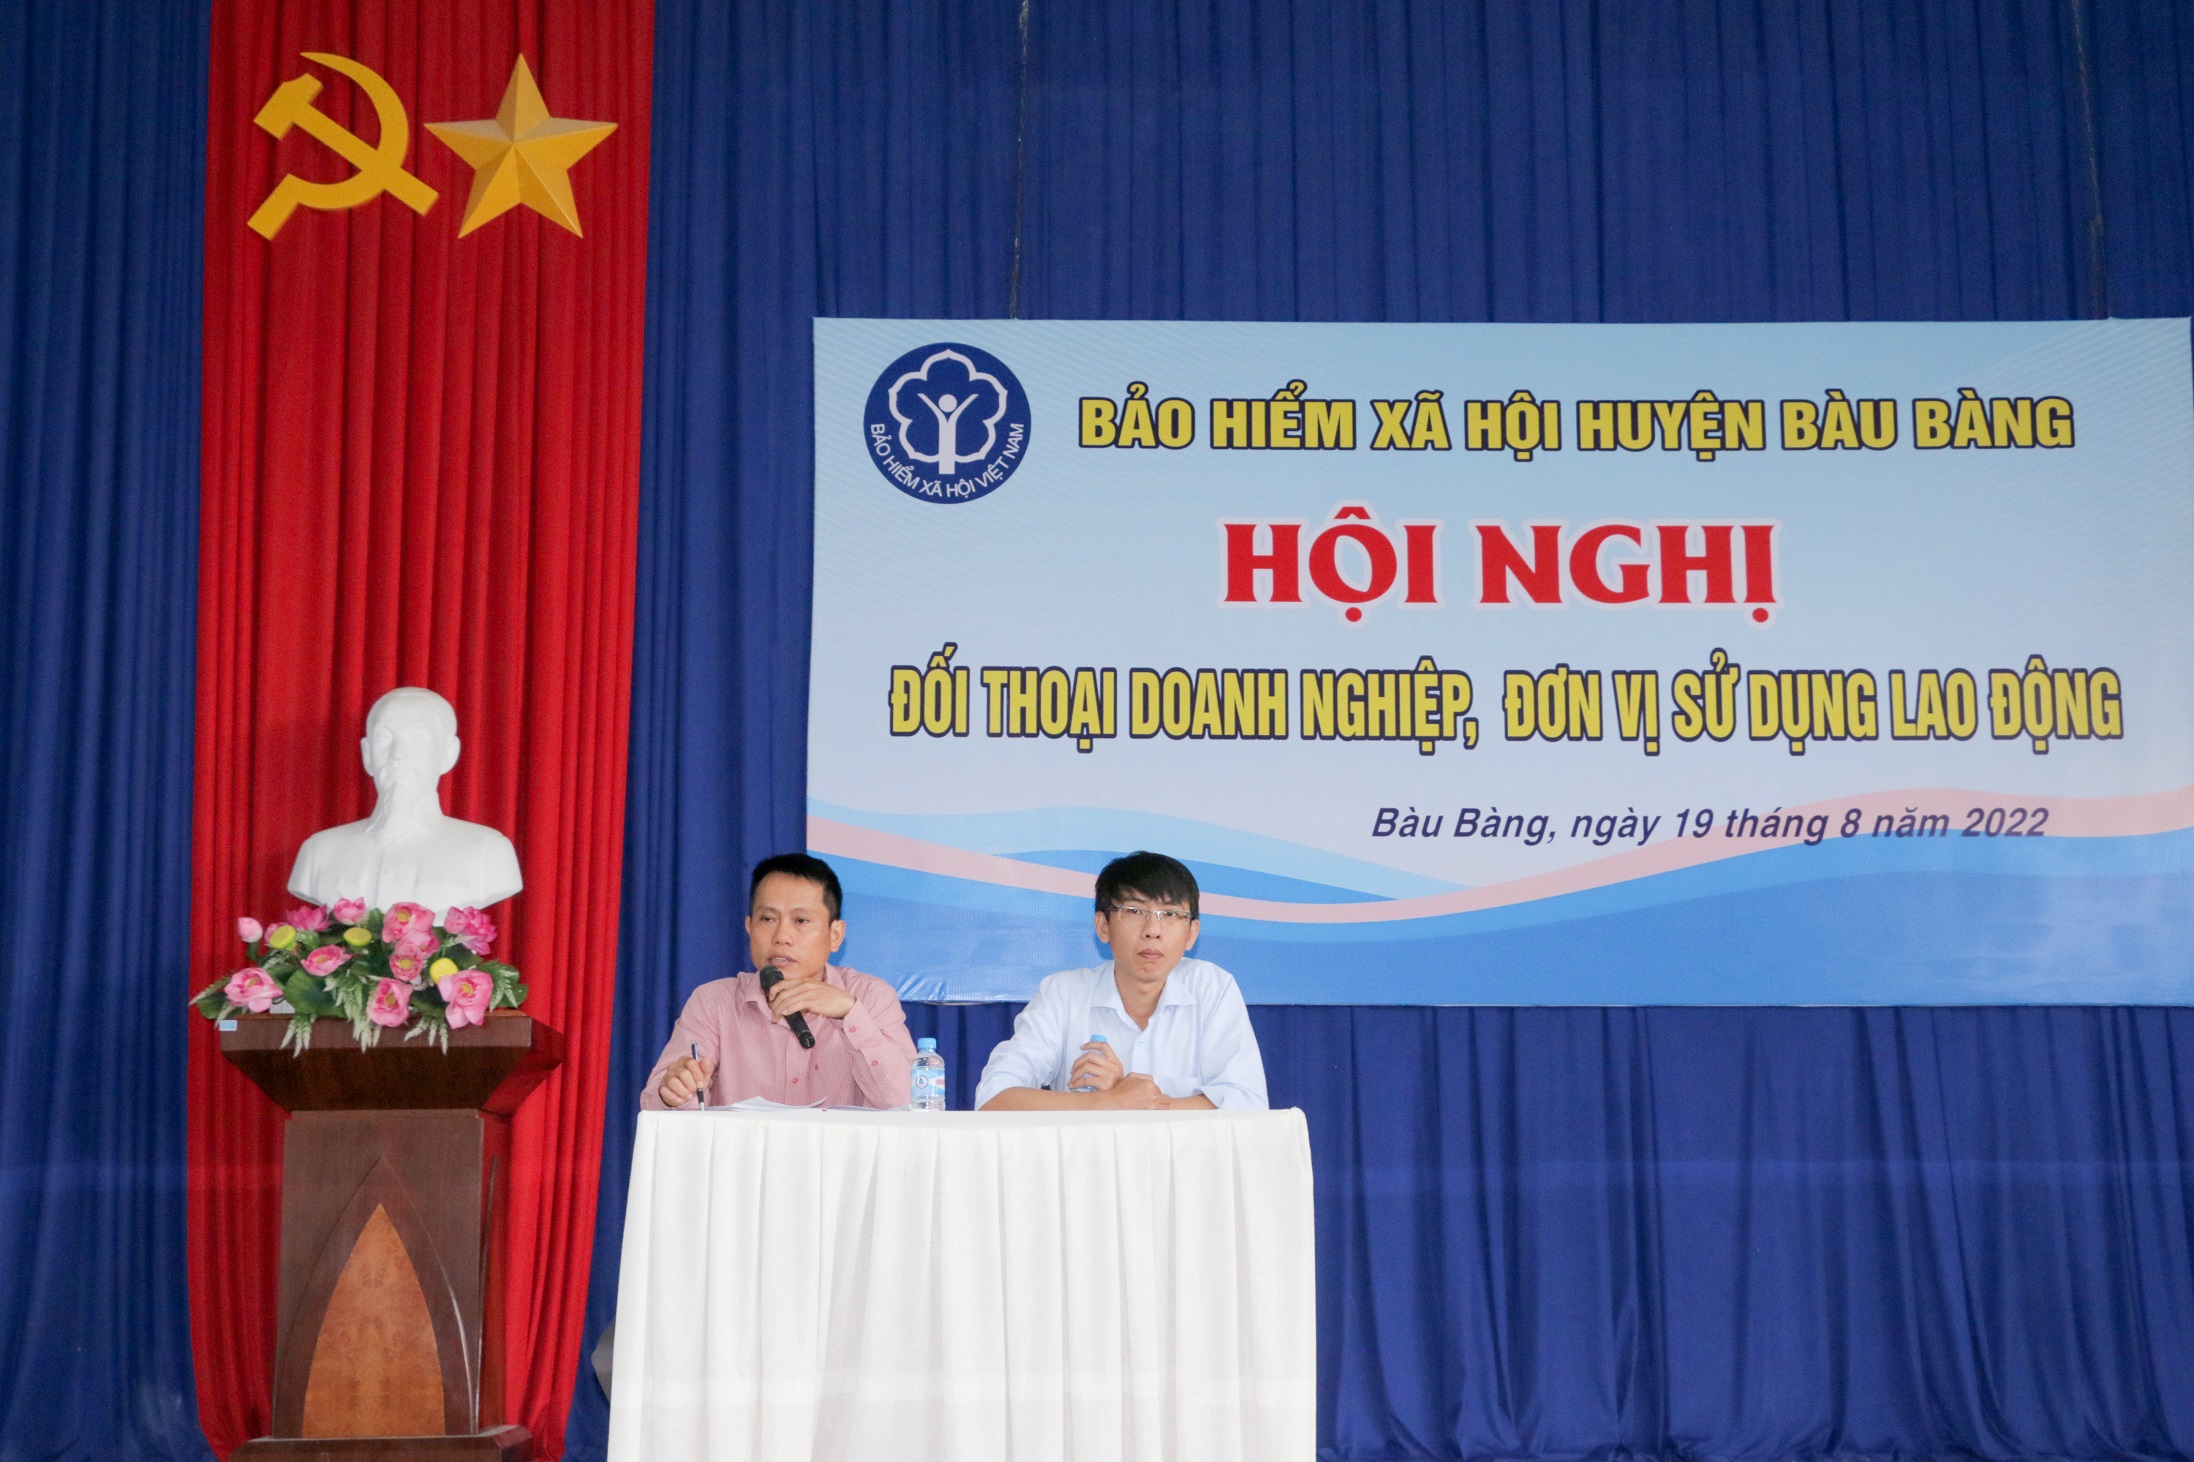 Bảo hiểm xã hội huyện Bàu Bàng tổ chức hội nghị đối thoại với doanh nghiệp, đơn vị sử dụng lao động năm 2022